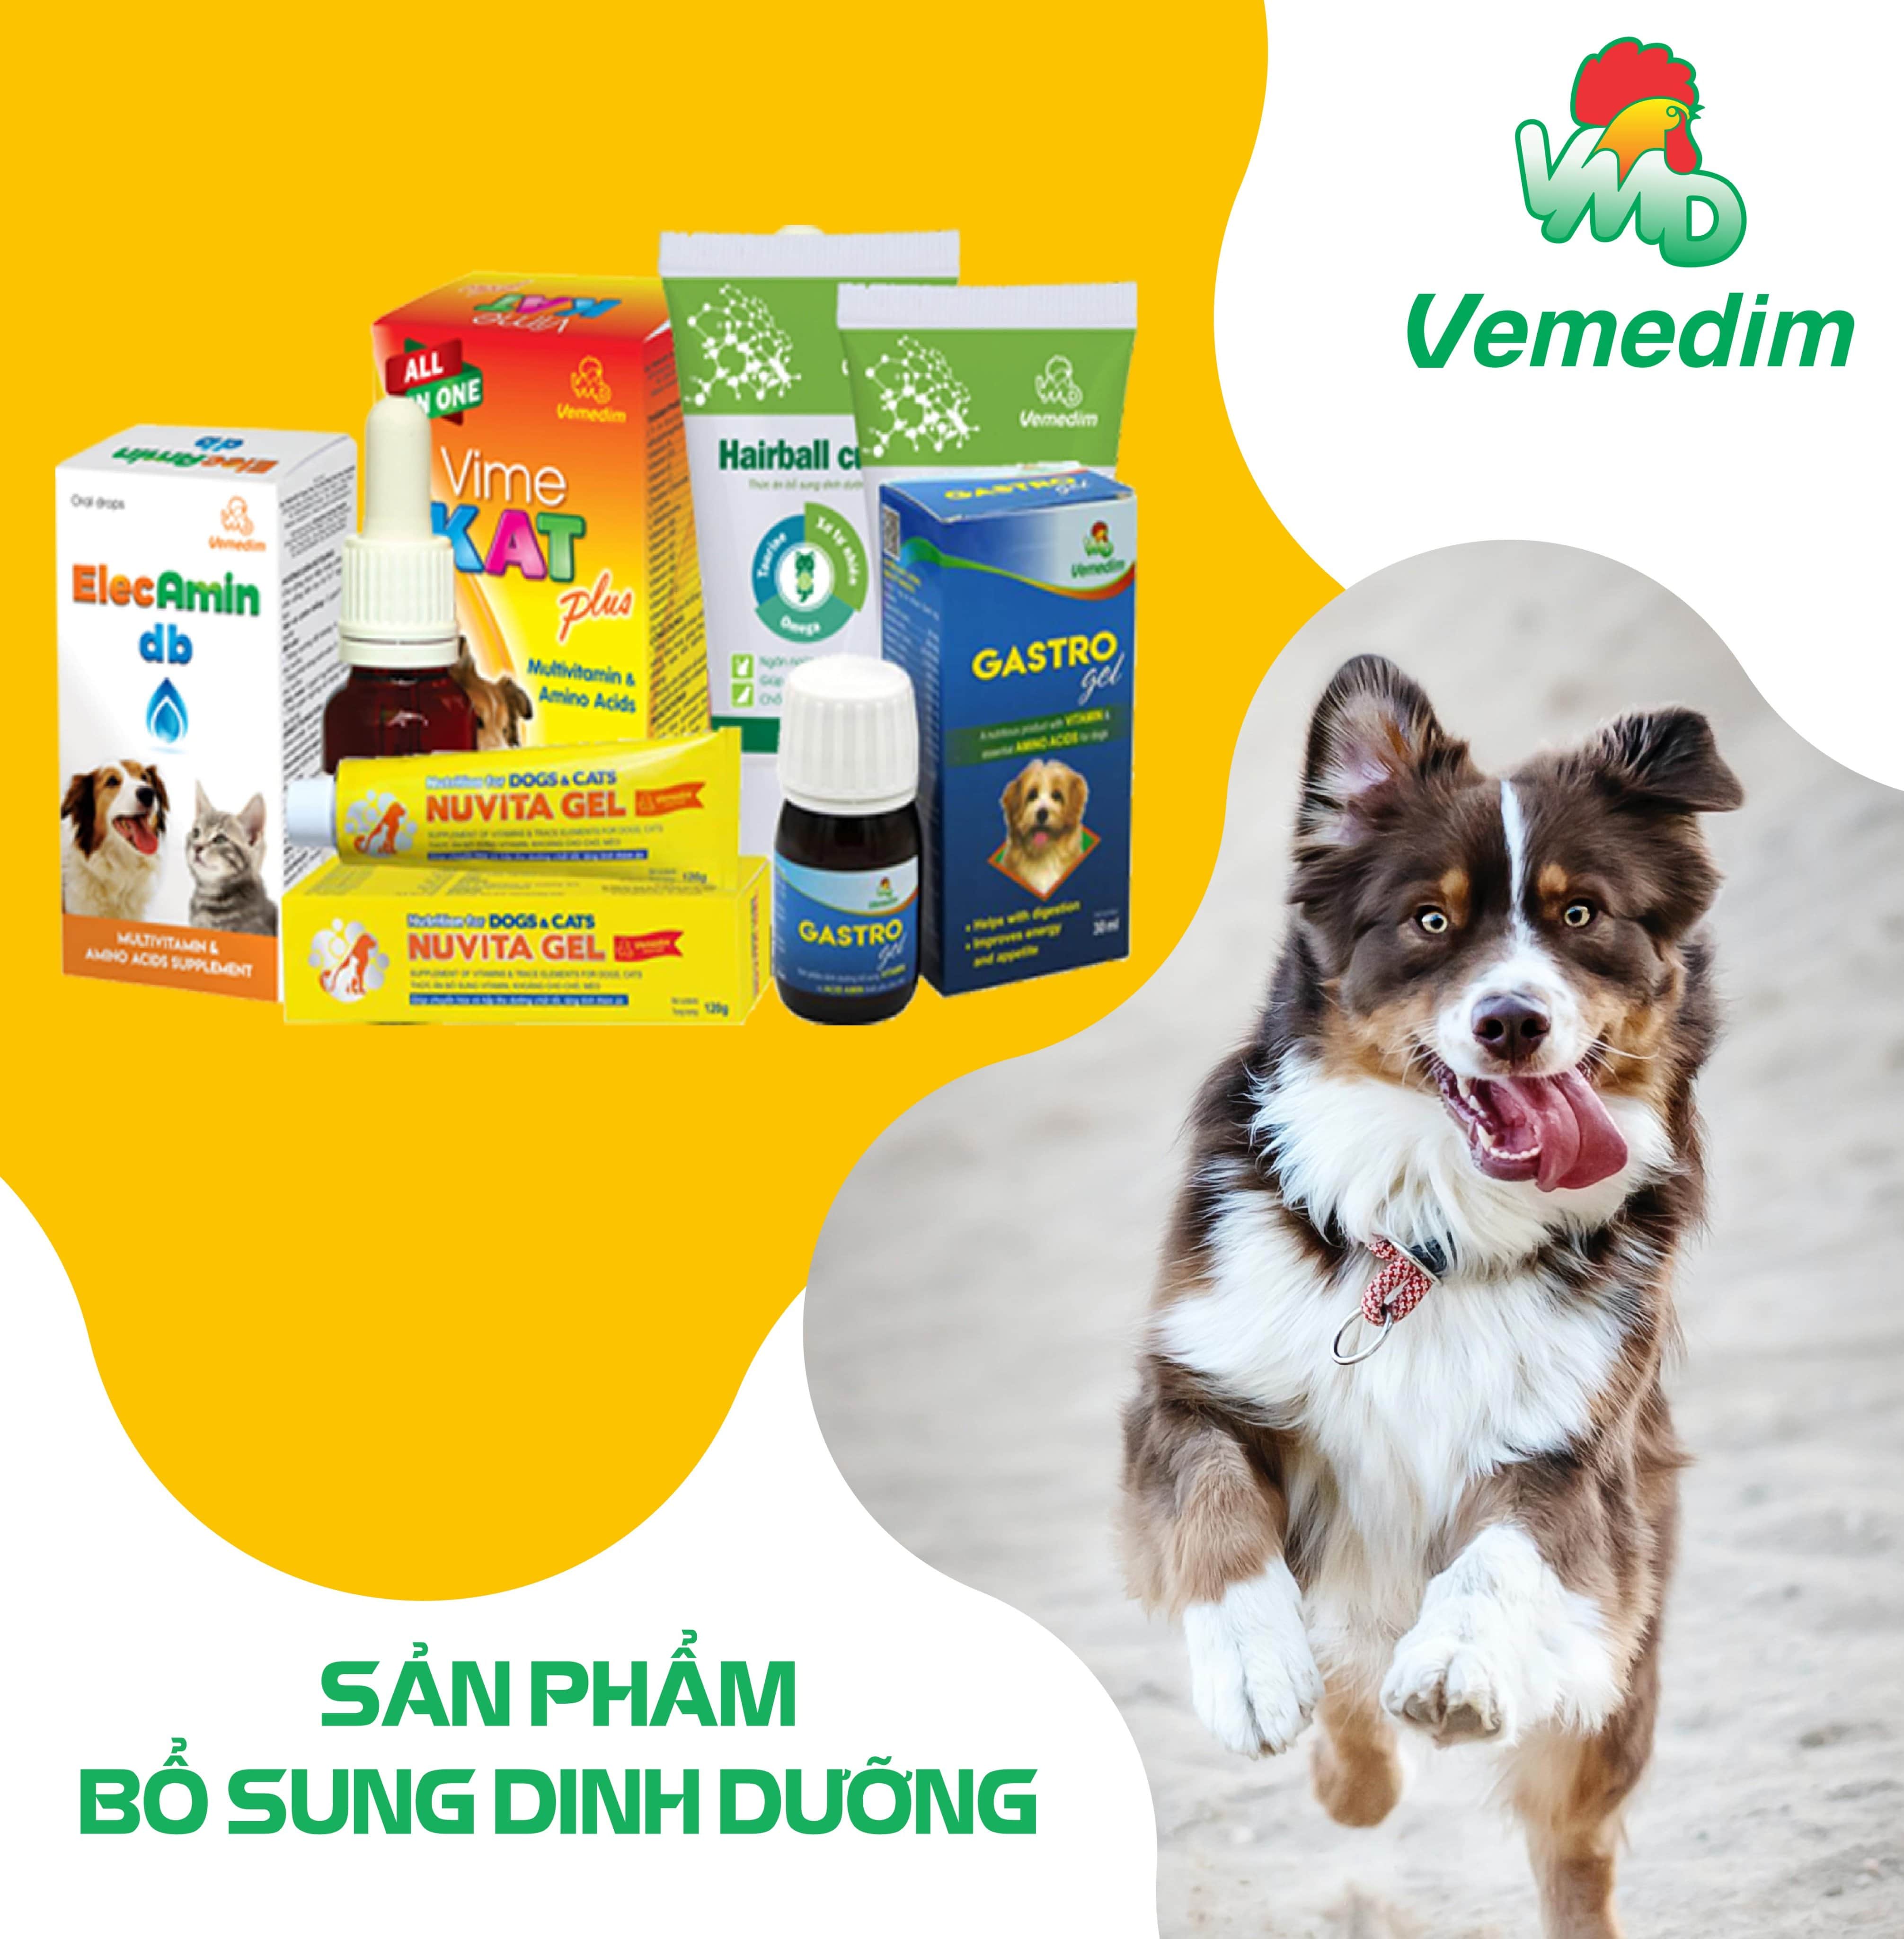 Vemedim Nourish Daily Shampoo sữa tắm hằng ngày cho chó mèo giúp thơm và mượt lông, chai 300ml